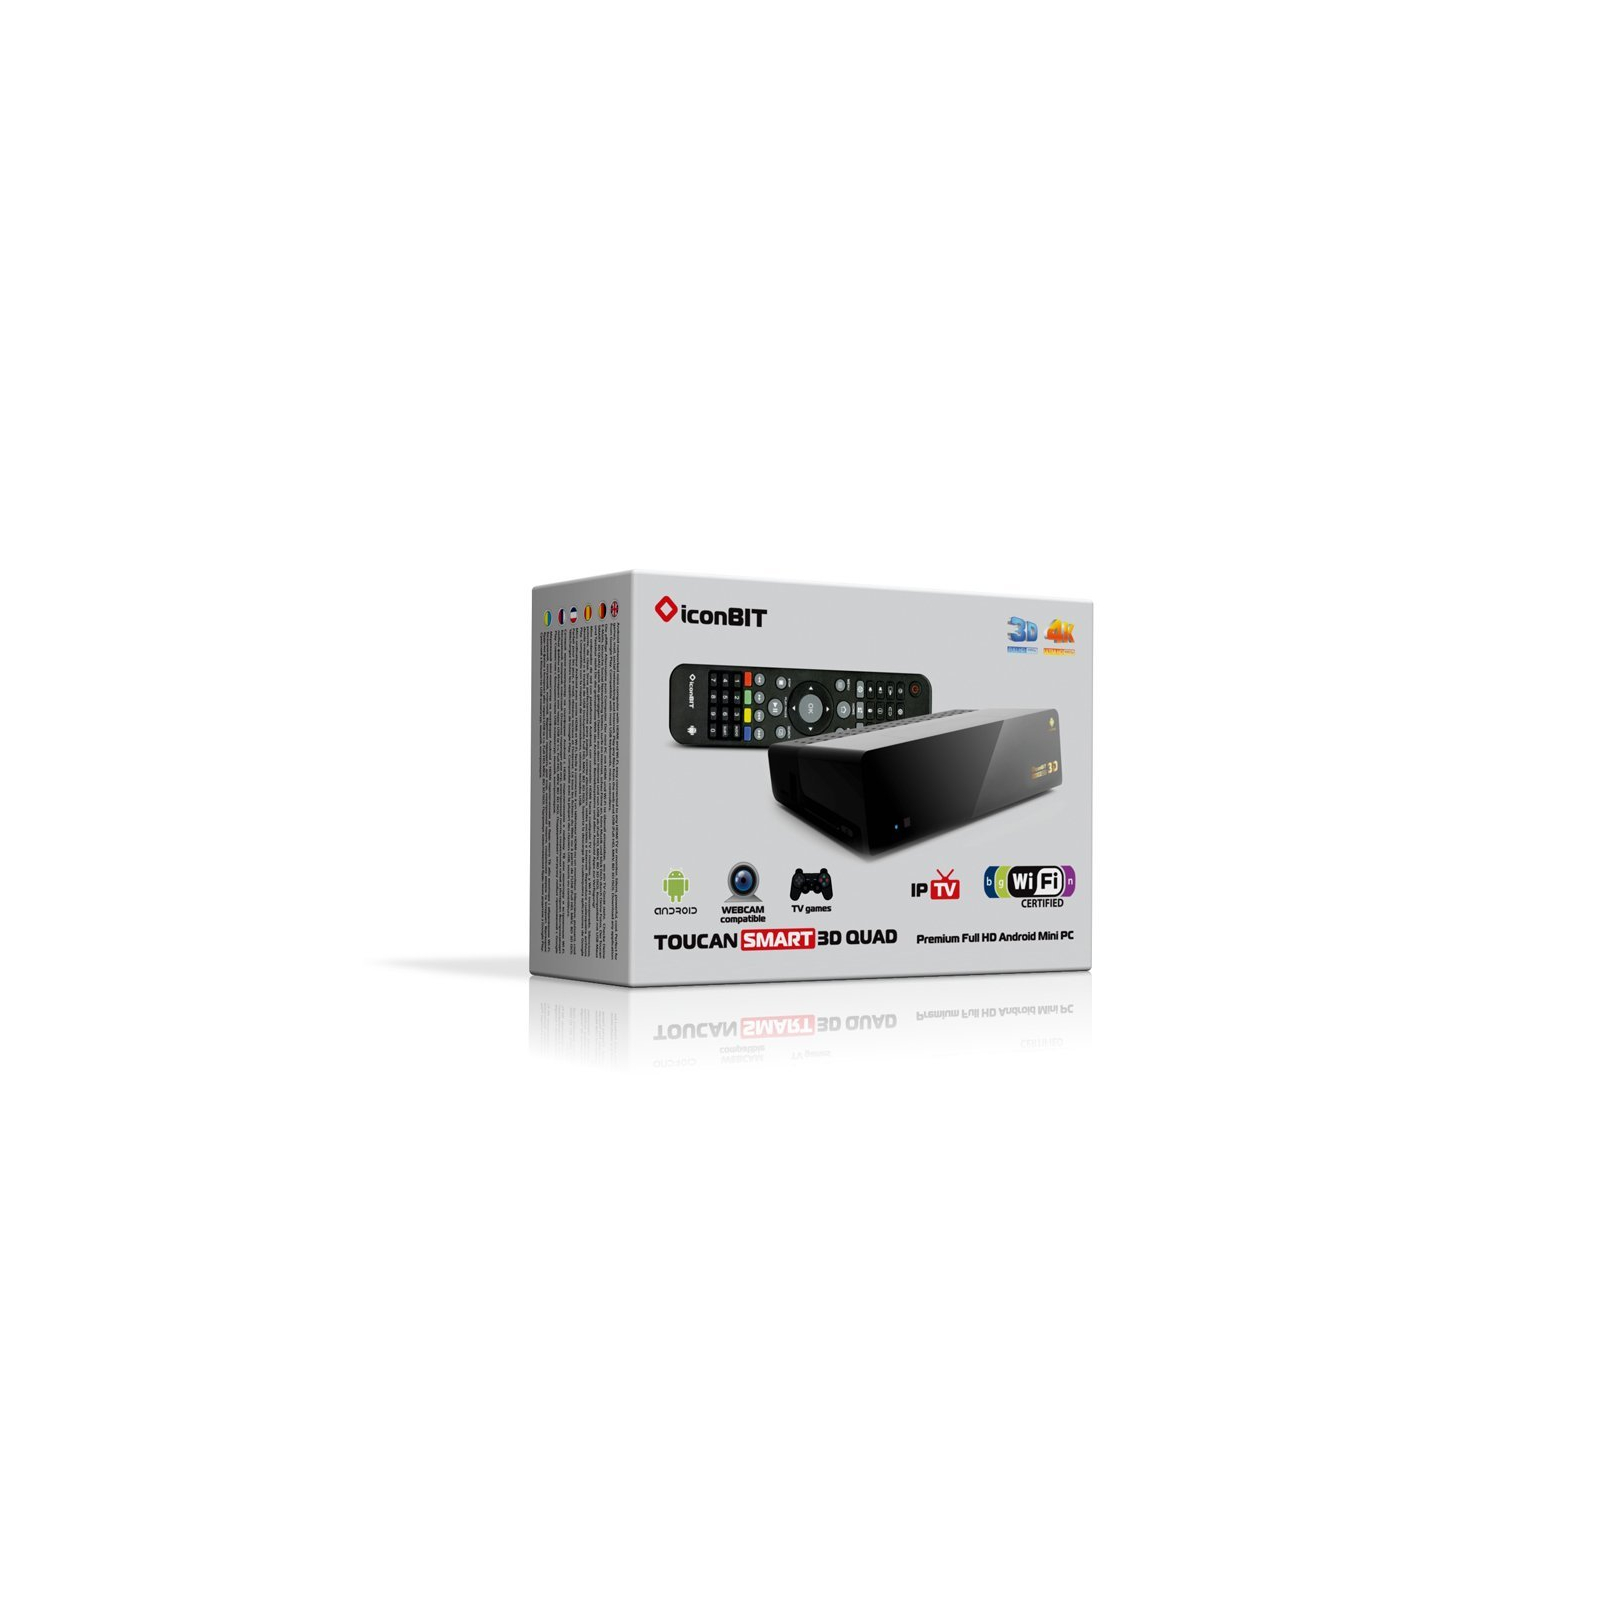 Медиаплеер iconBIT Toucan Smart 3D Quad(PC-0109N) изображение 2